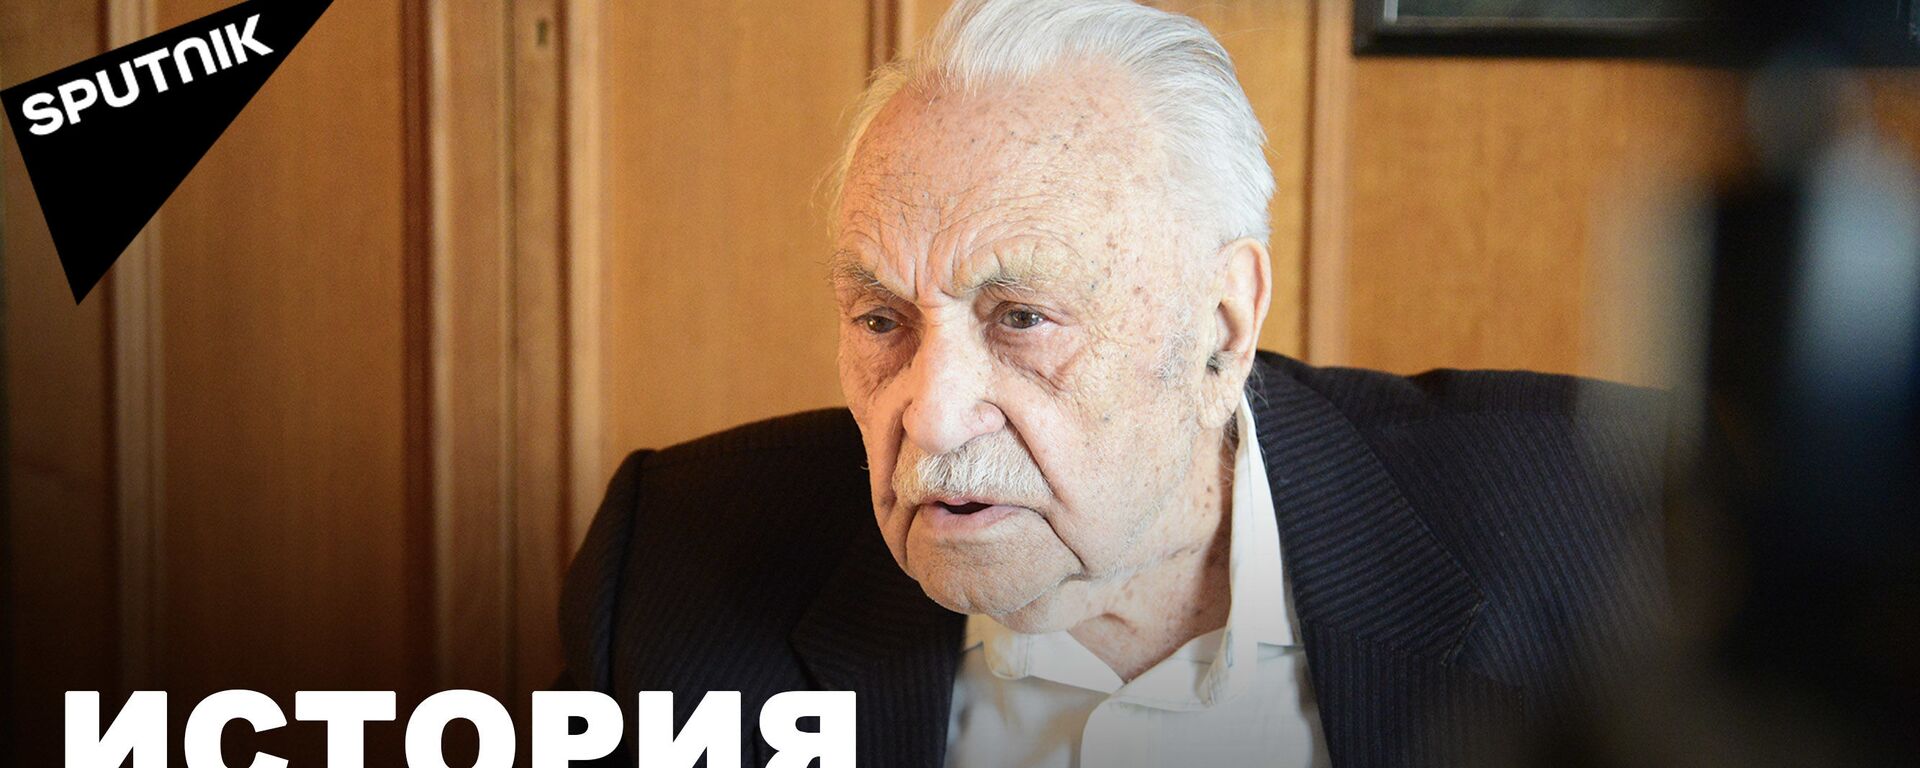 А тут тишина…: Вторая мировая война глазами ветерана из Грузии - видео - Sputnik Грузия, 1920, 07.05.2021